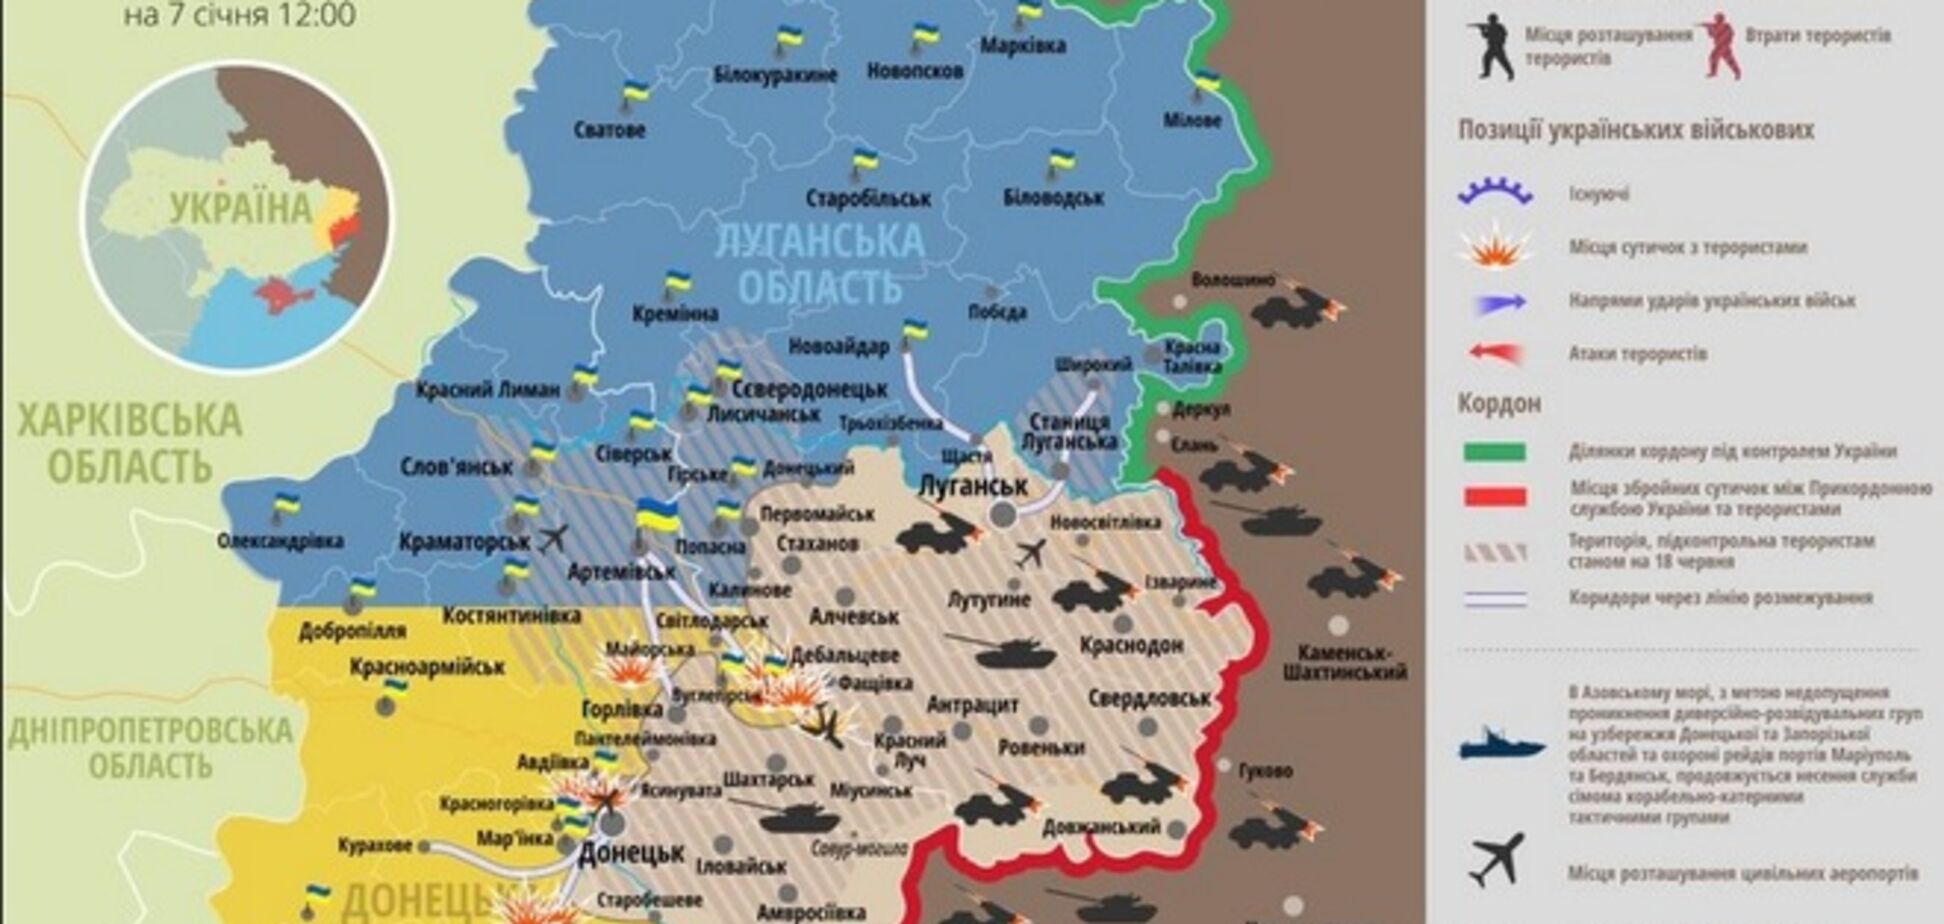 За сутки на Донбассе погибли трое украинских военных: актуальная карта АТО